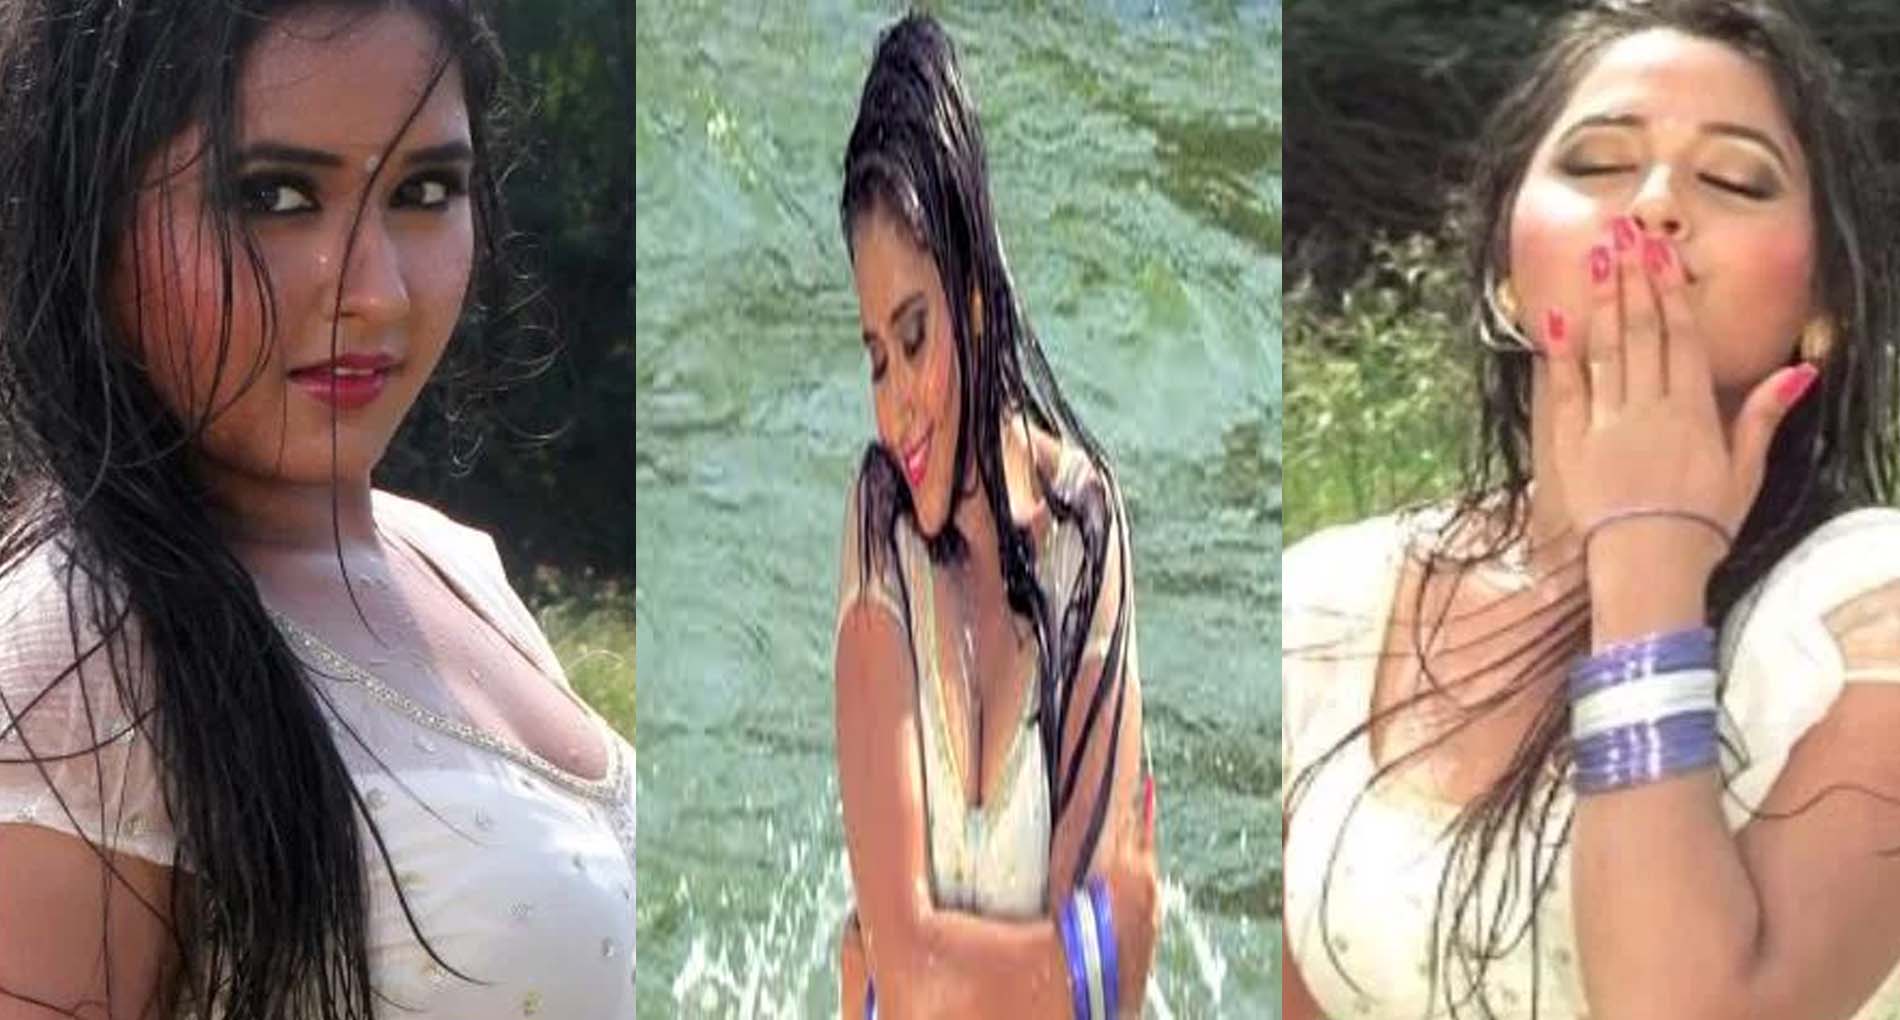 Hottest Actress Kajal Laghwani Sex Video - Kajal Raghwani Hot Video: à¤•à¤¾à¤œà¤² à¤°à¤¾à¤˜à¤µà¤¾à¤¨à¥€ à¤•à¥‡ à¤¹à¥‰à¤Ÿ à¤µà¥€à¤¡à¤¿à¤¯à¥‹ à¤¨à¥‡ à¤¬à¤¢à¤¼à¤¾à¤¯à¤¾ à¤¤à¤¾à¤ªà¤®à¤¾à¤¨,  à¤¦à¥‡à¤–à¥‡à¤‚ Video